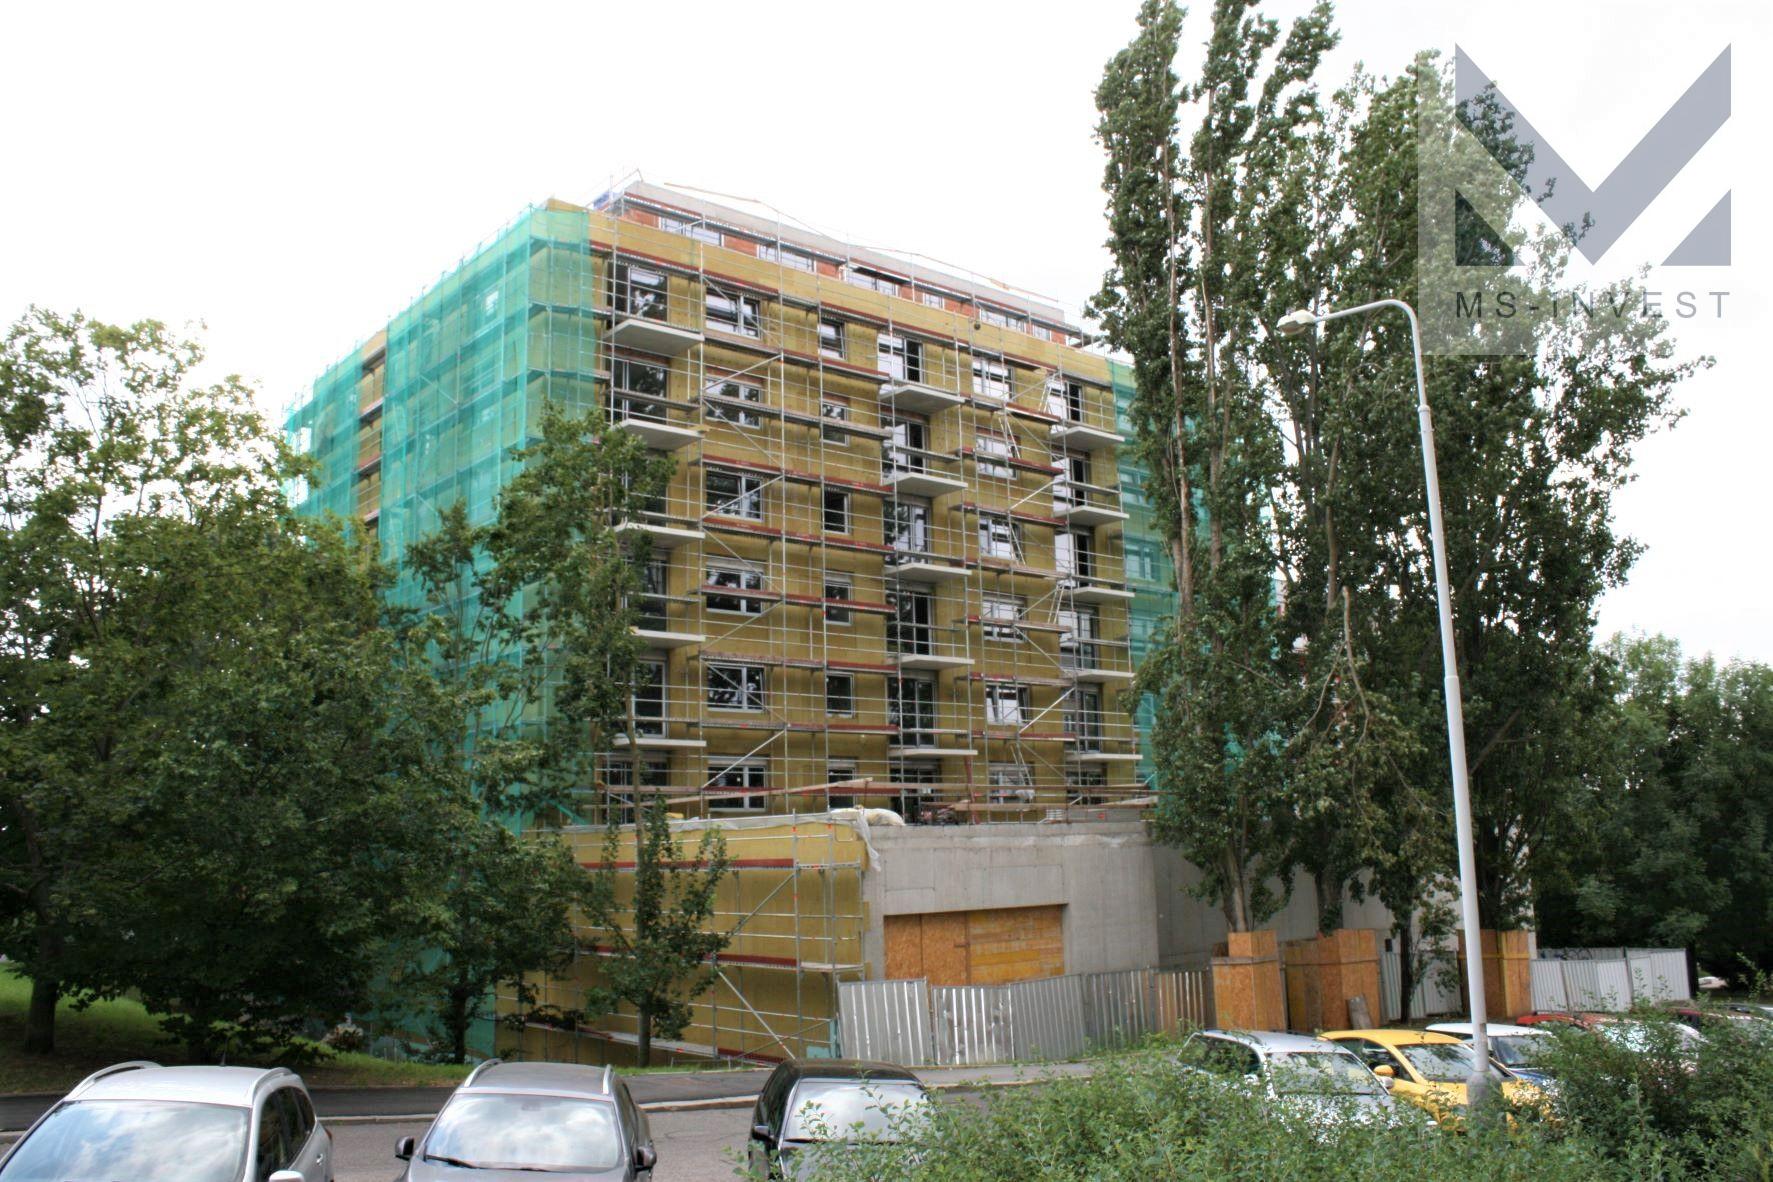 Byt 4+kk (5G) 110 m2 s balkonem 4,8 m2 v novostavbě bytového domu v Řepích, obrázek č. 1